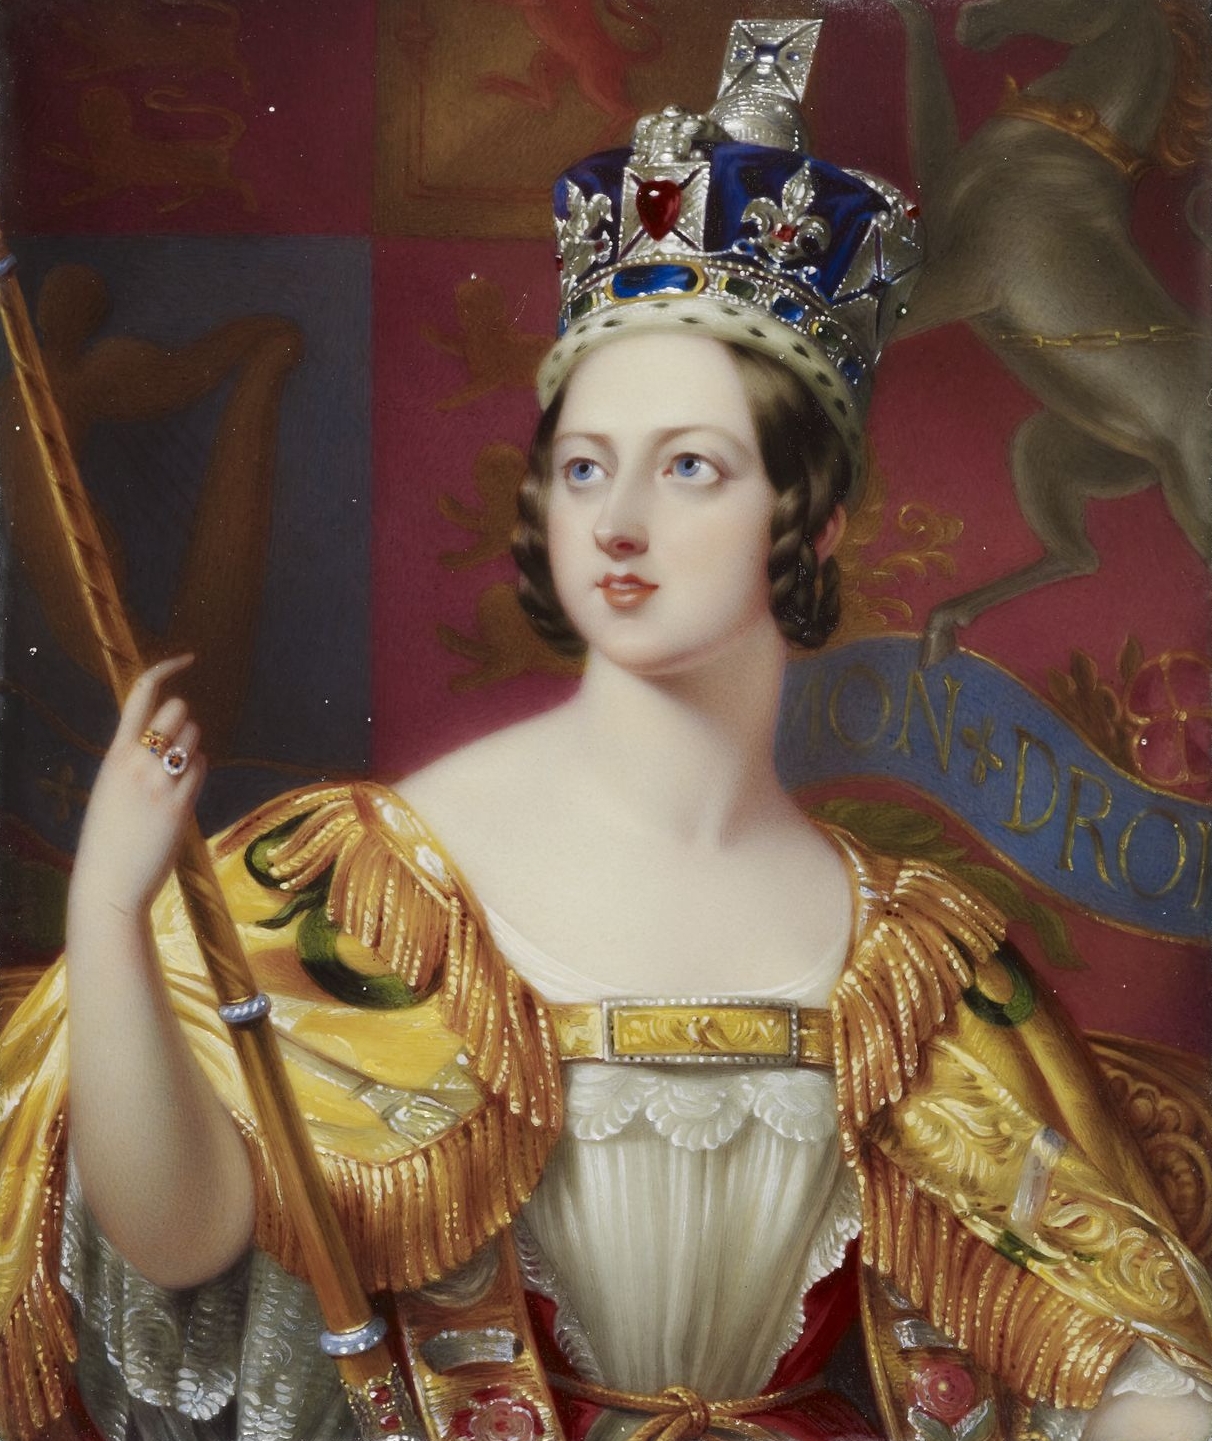 Coronation of Queen Victoria - Wikipedia
